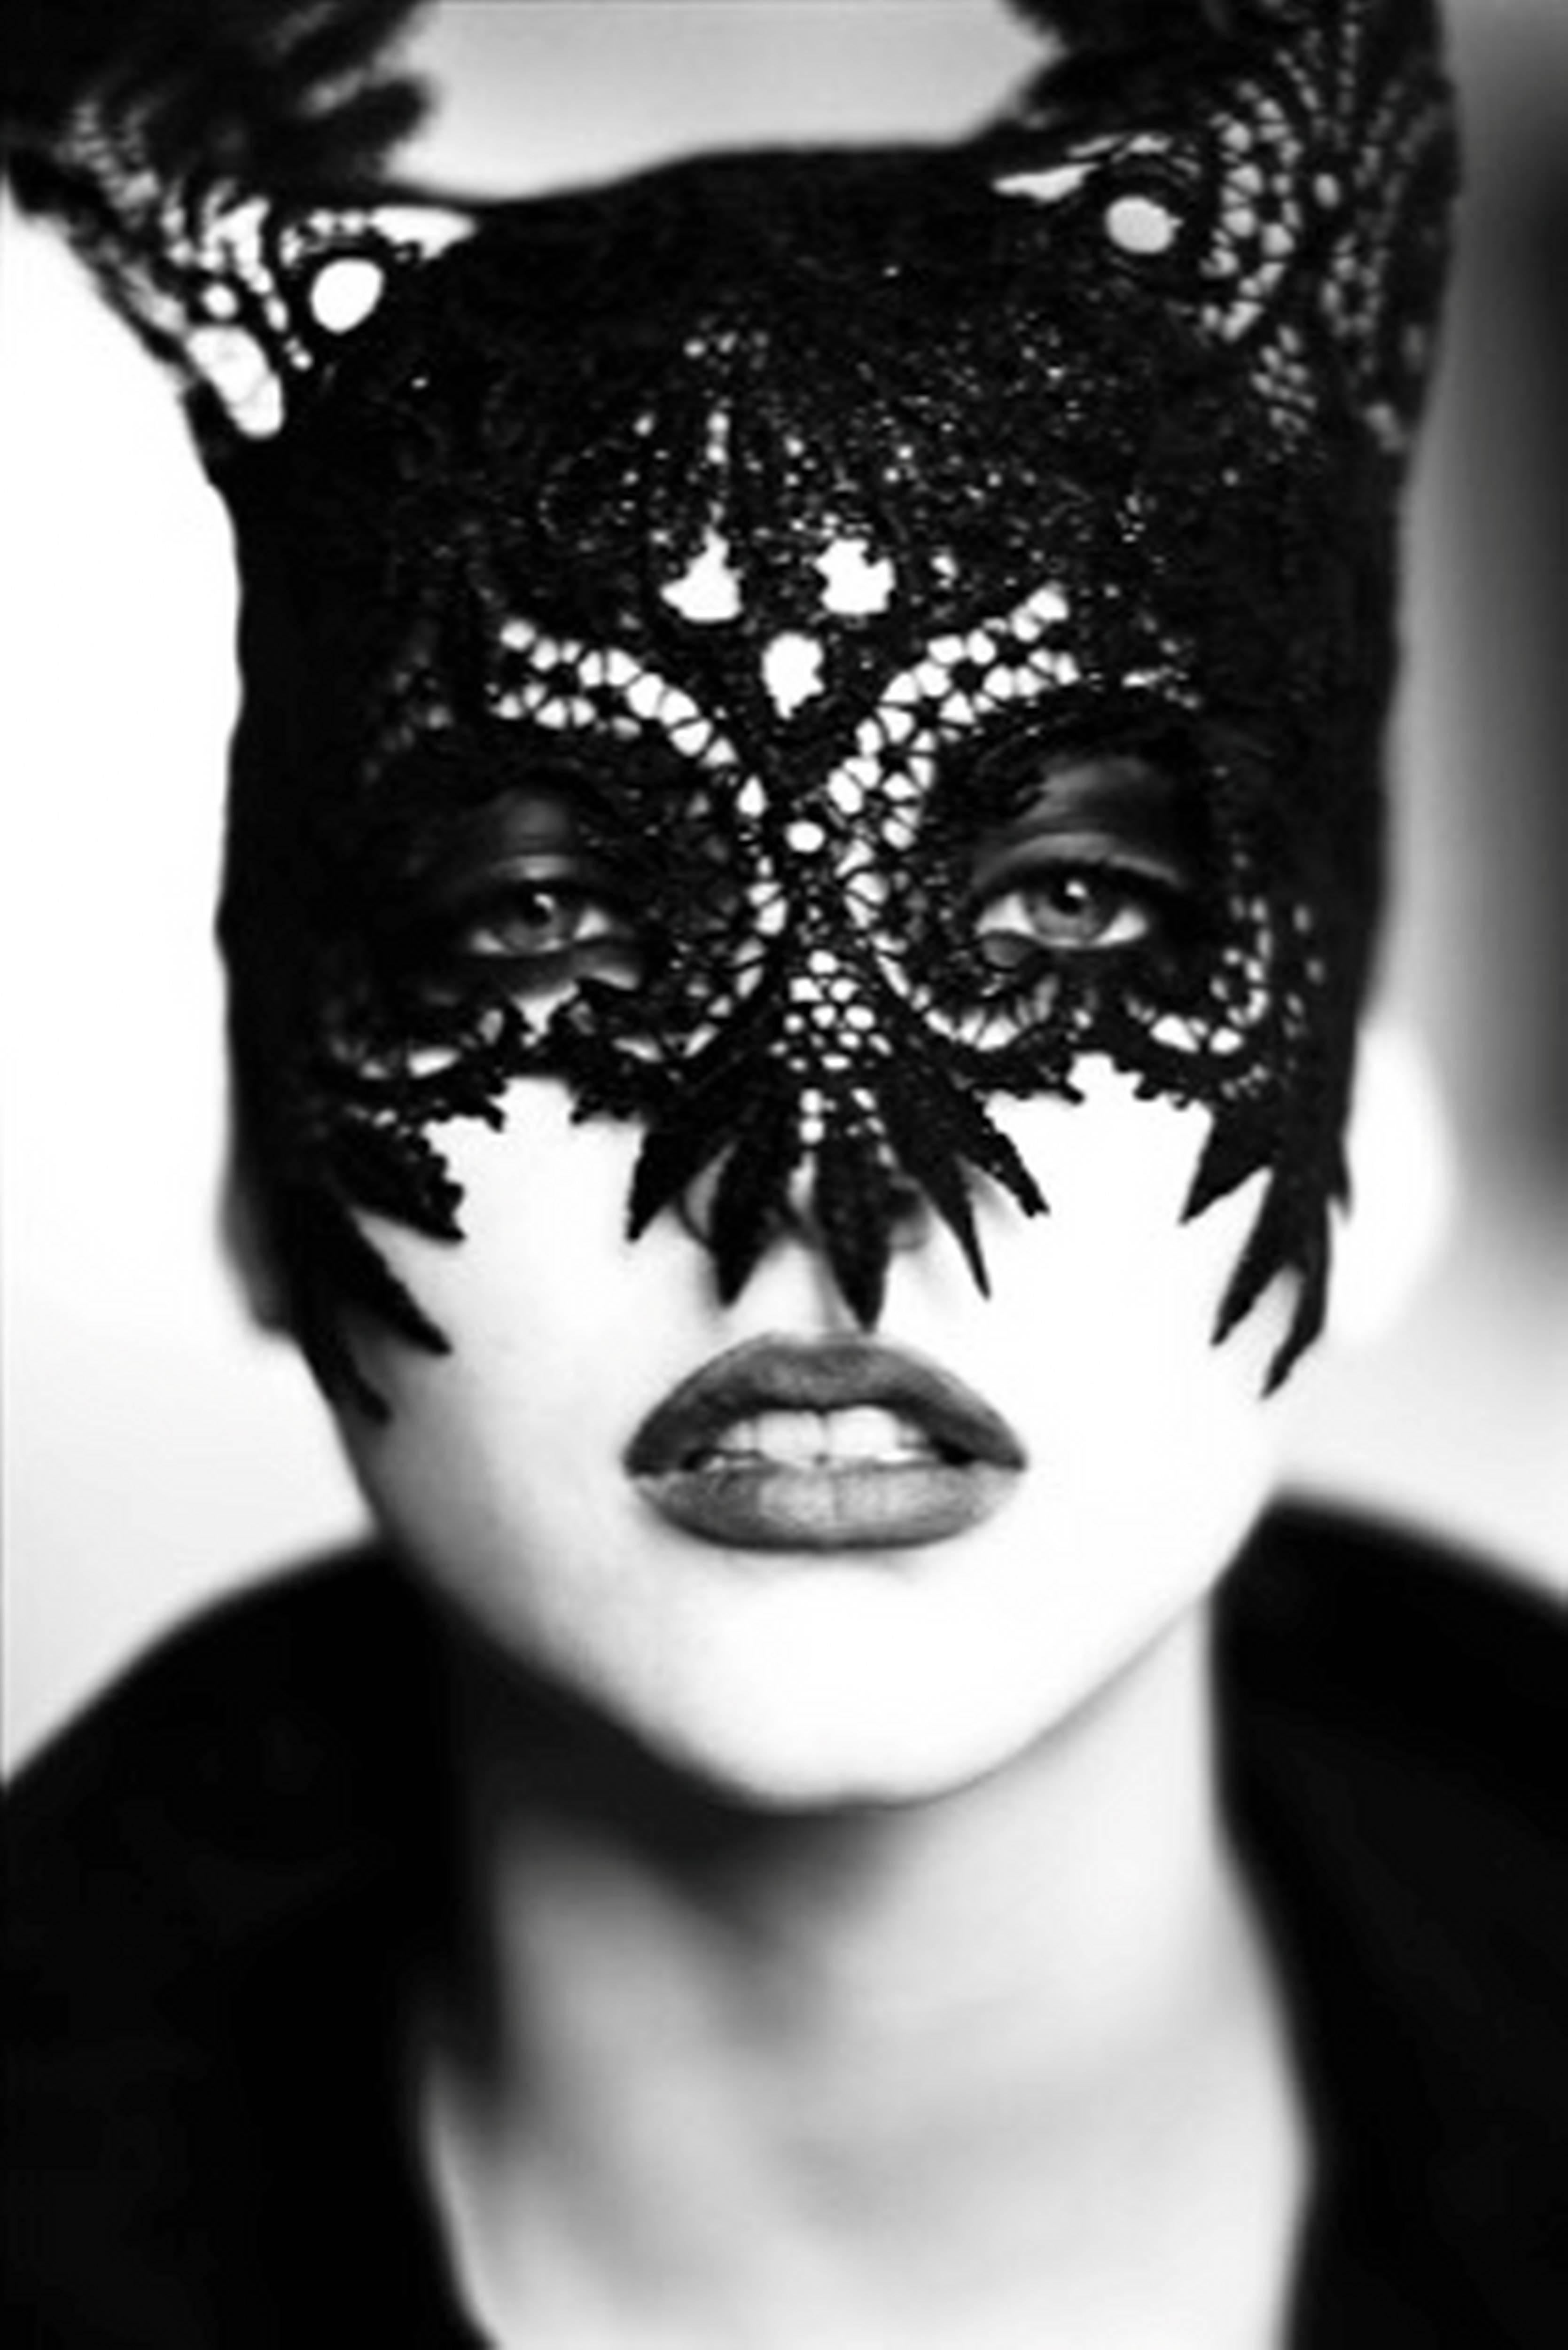 Ellen von Unwerth Black and White Photograph - The Mask (Nadja Auermann)